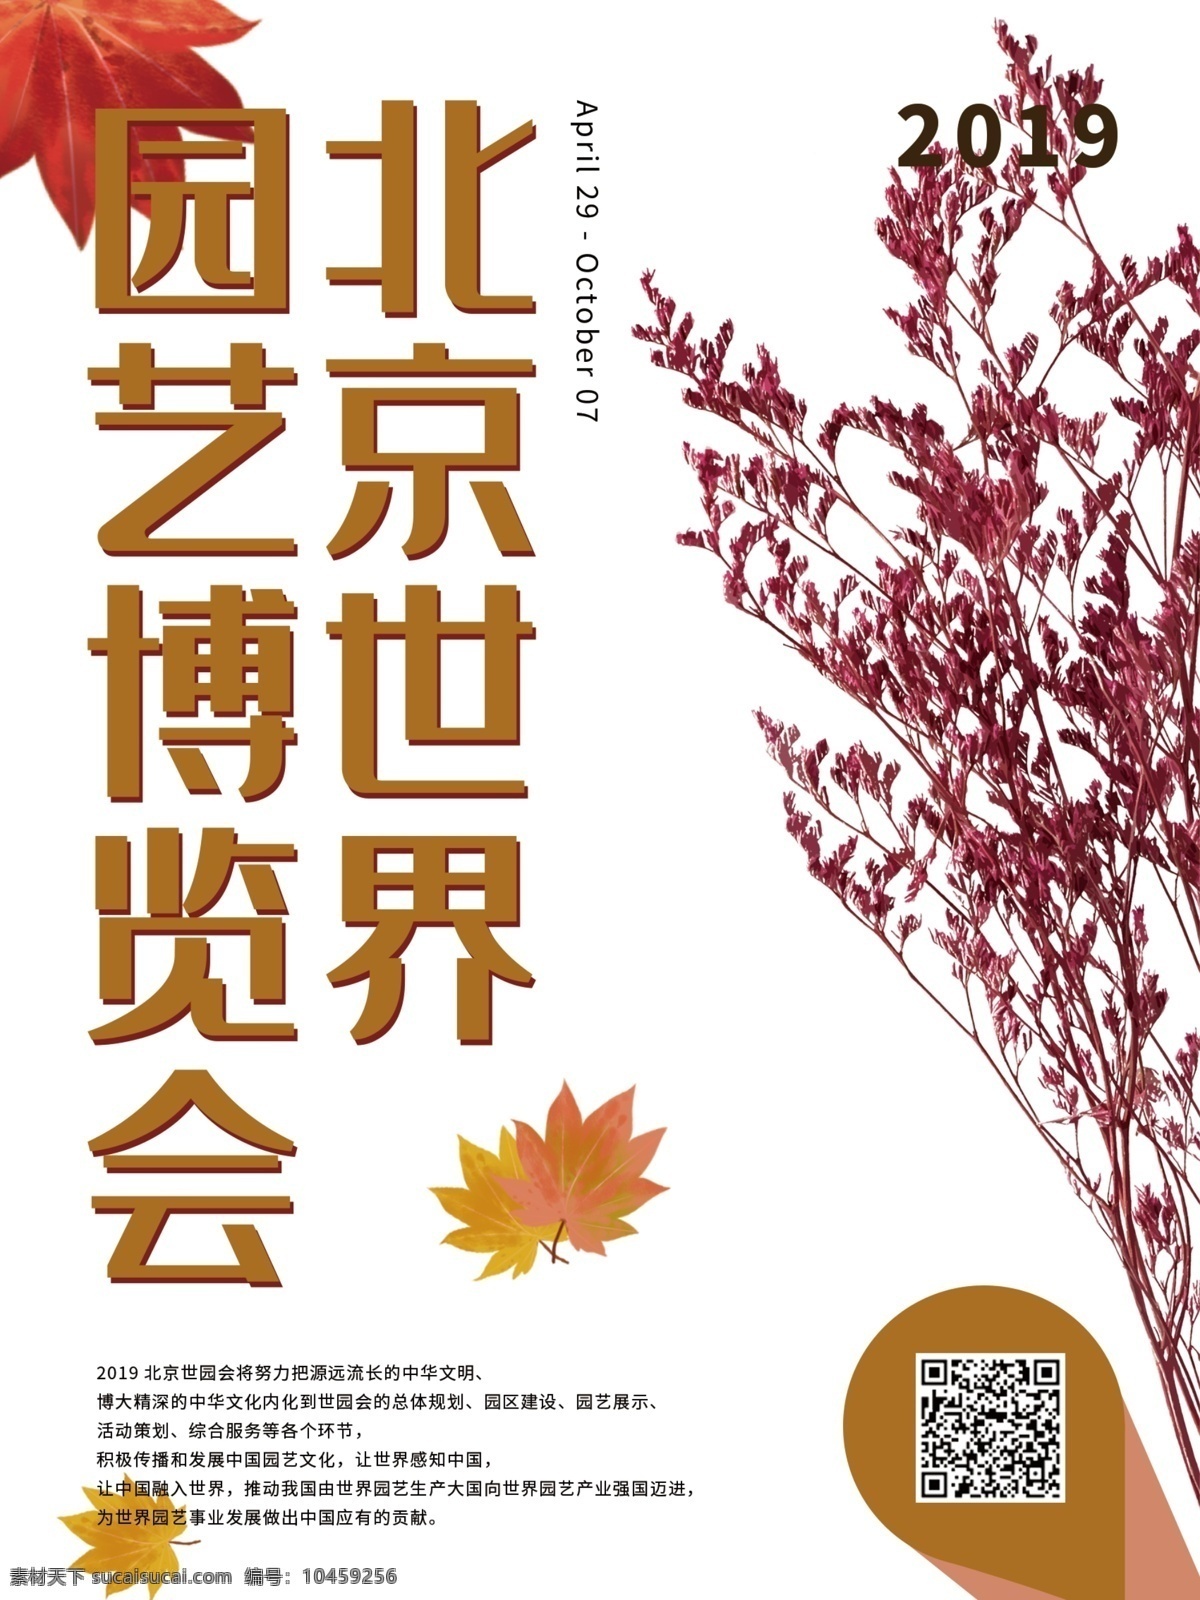 色彩 植物 北京 世界园艺博览会 枫叶 花朵 方块 色块 浪漫 大片 宣传 简约 元素 小清新 环境 绿色家园 活动 园艺 中国 海报 模板